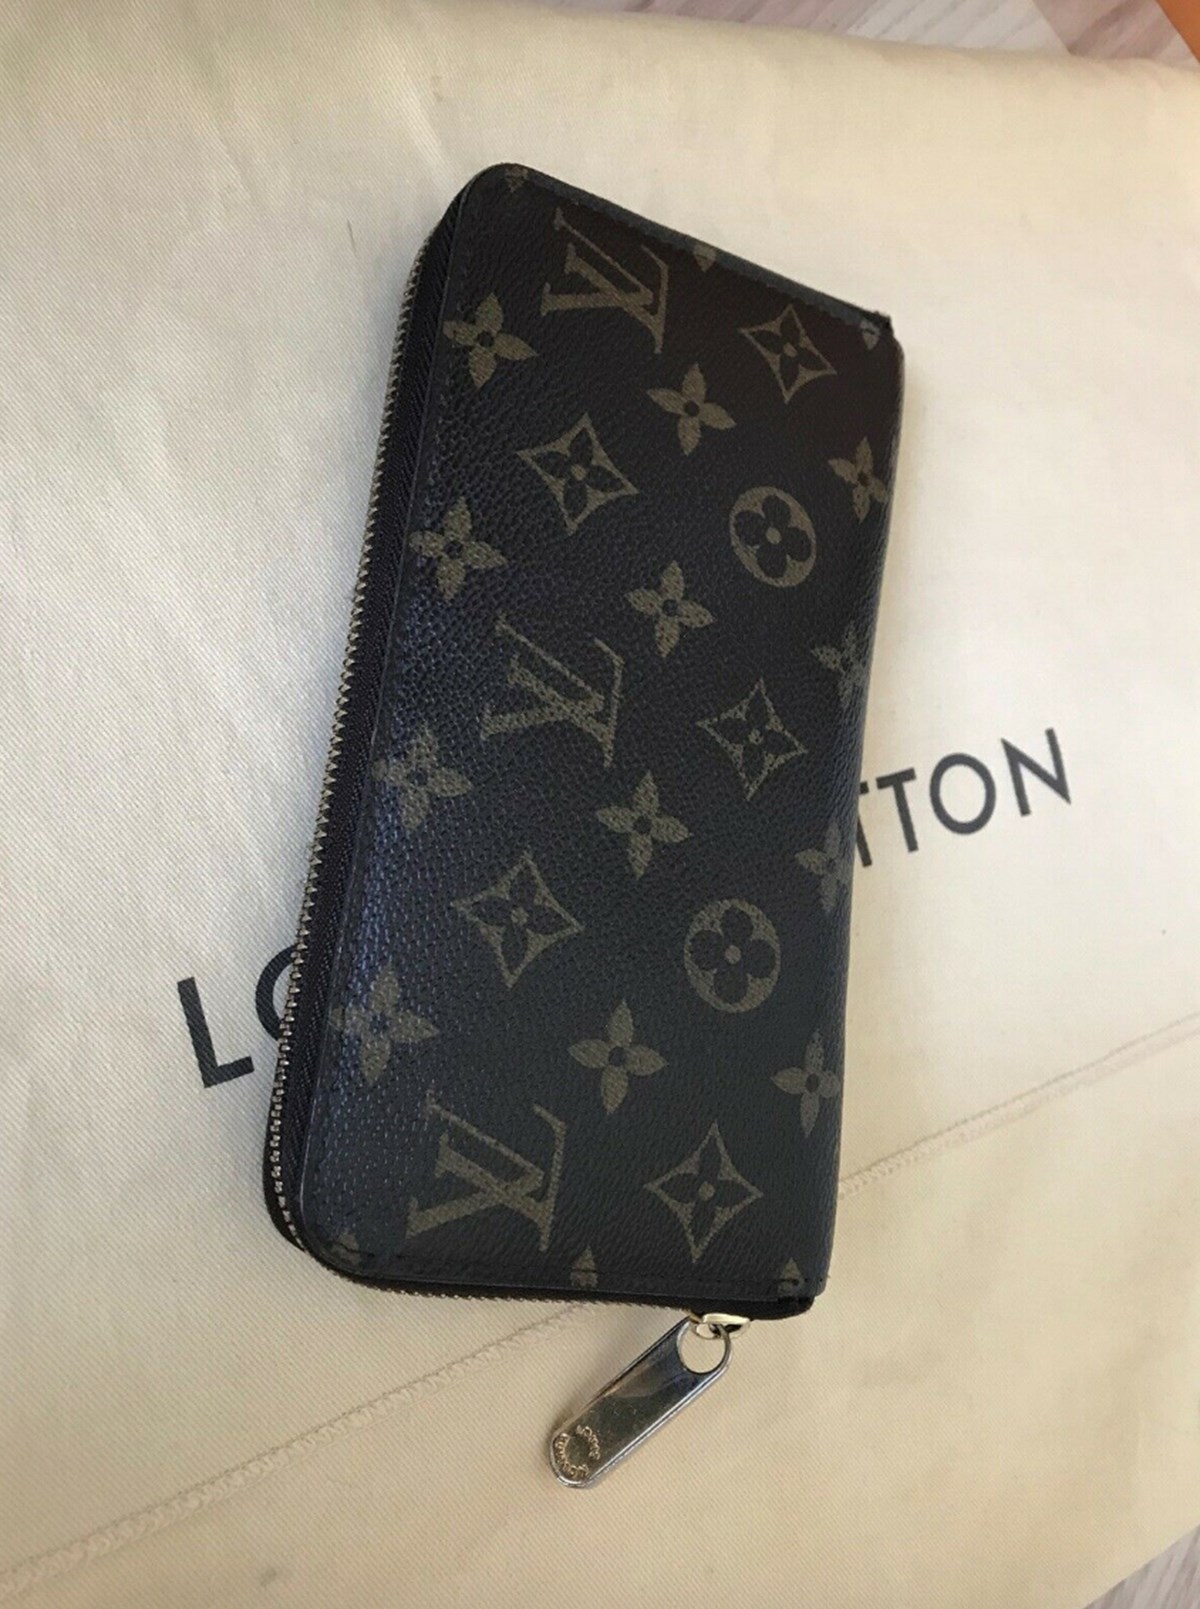 Du kan finde både tasker, nøgleringe og punge fra Louis Vuitton på DBA, og lige nu er der for eksempel 57 punge